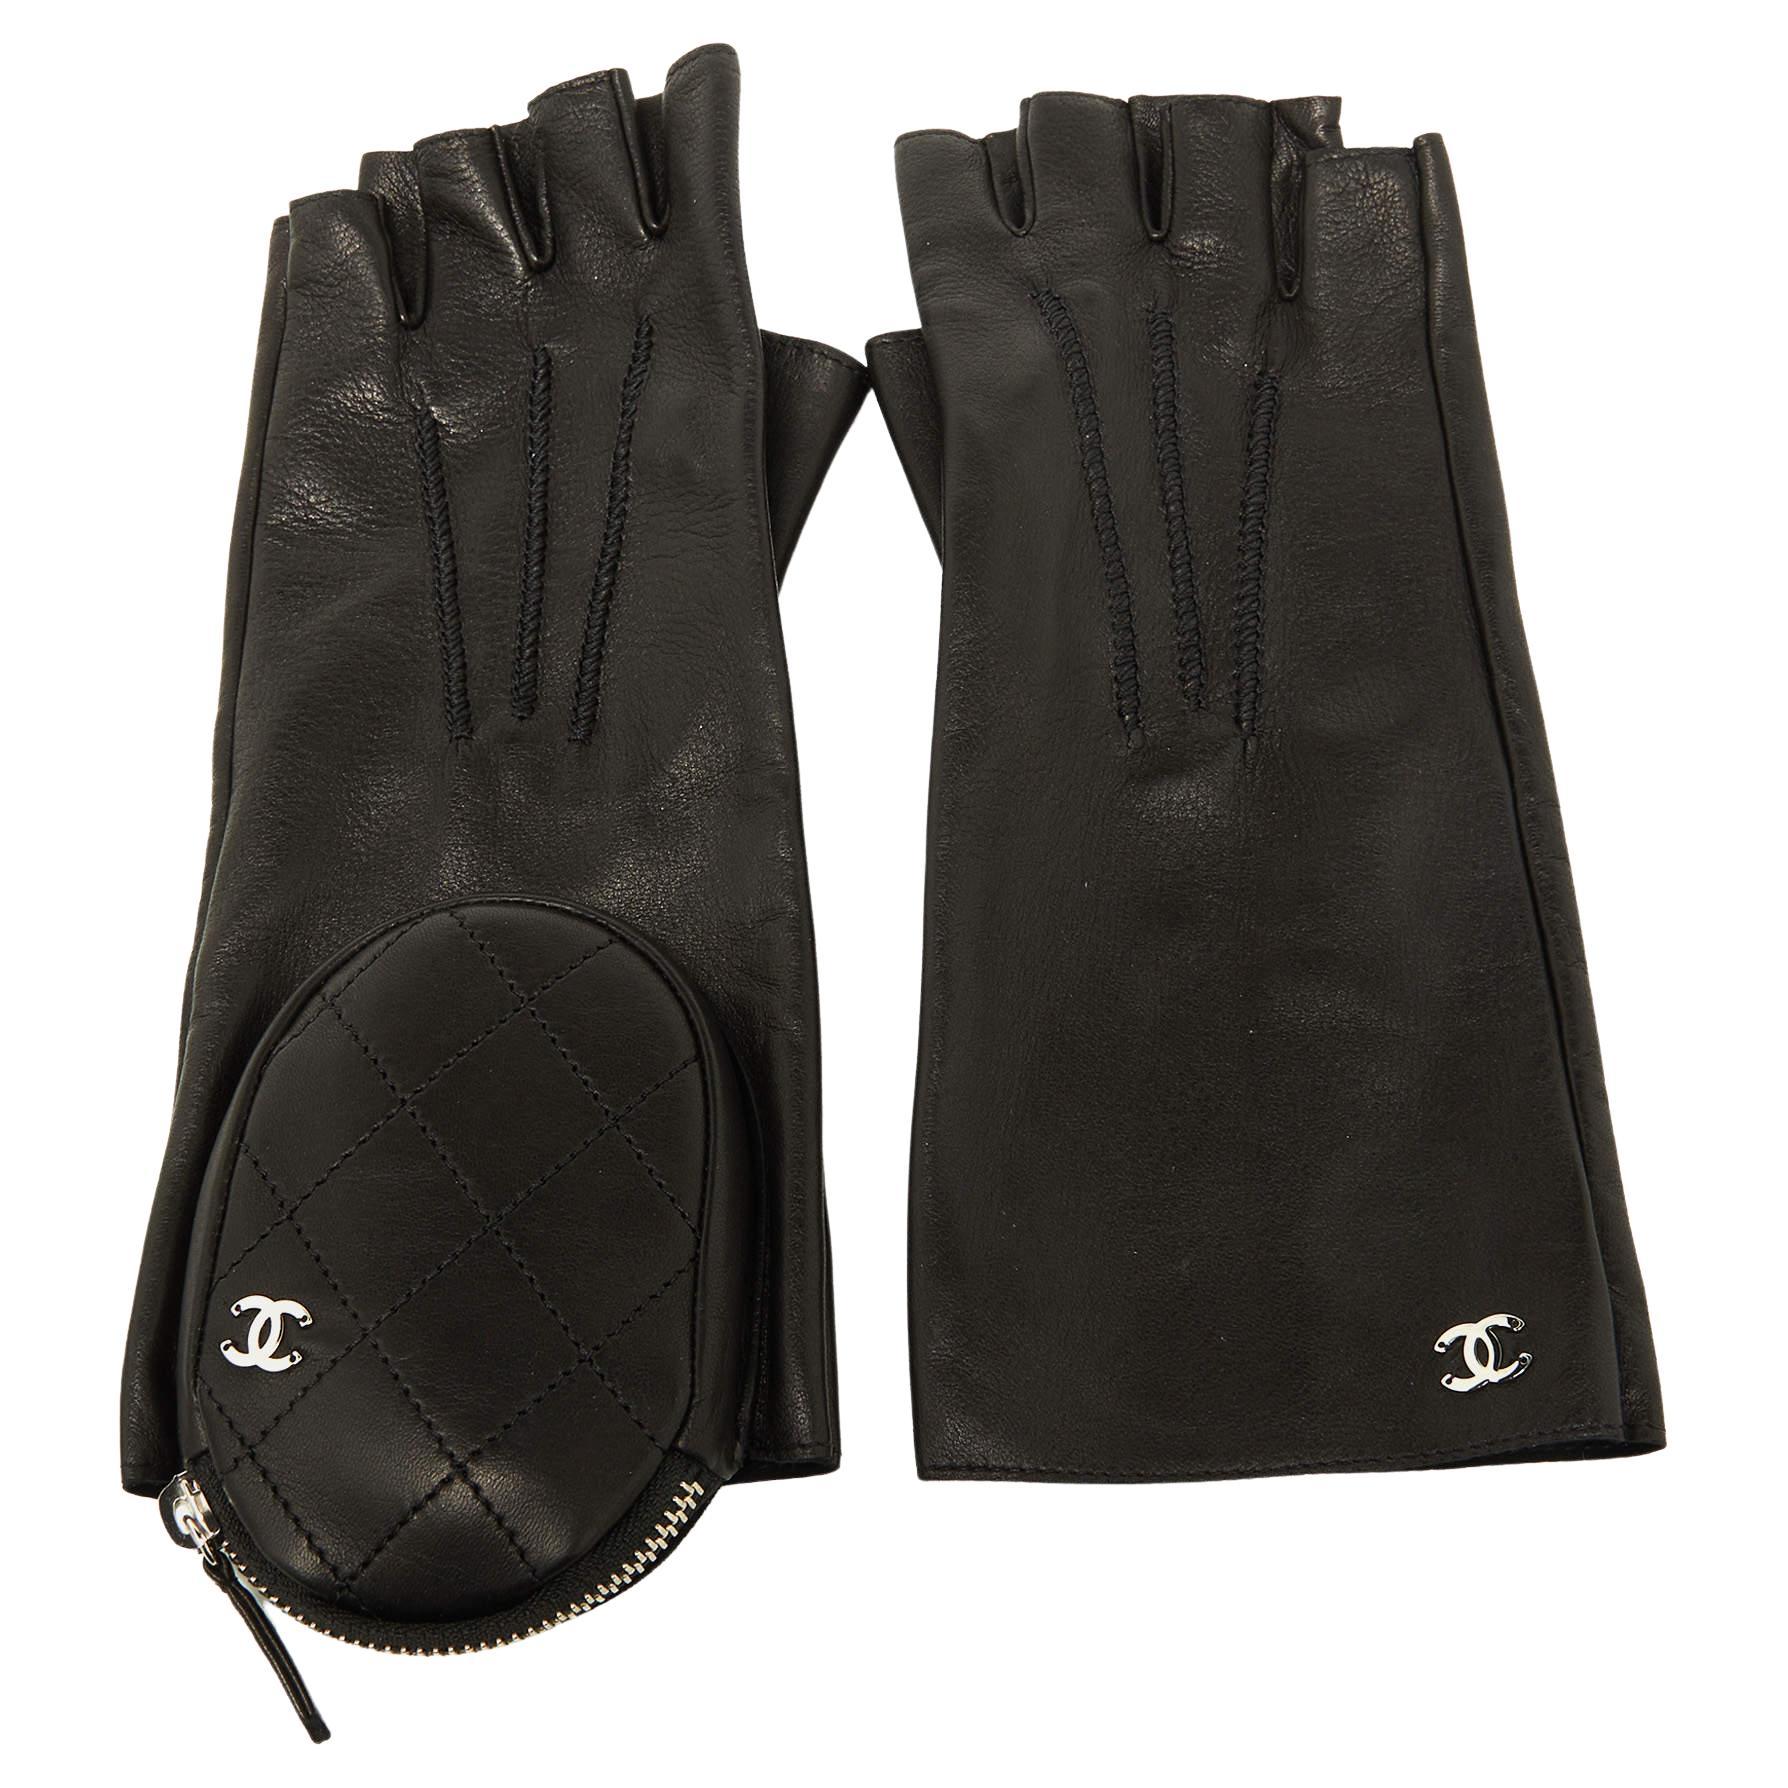 New Chanel fingerless gloves. Chanel VIP gift